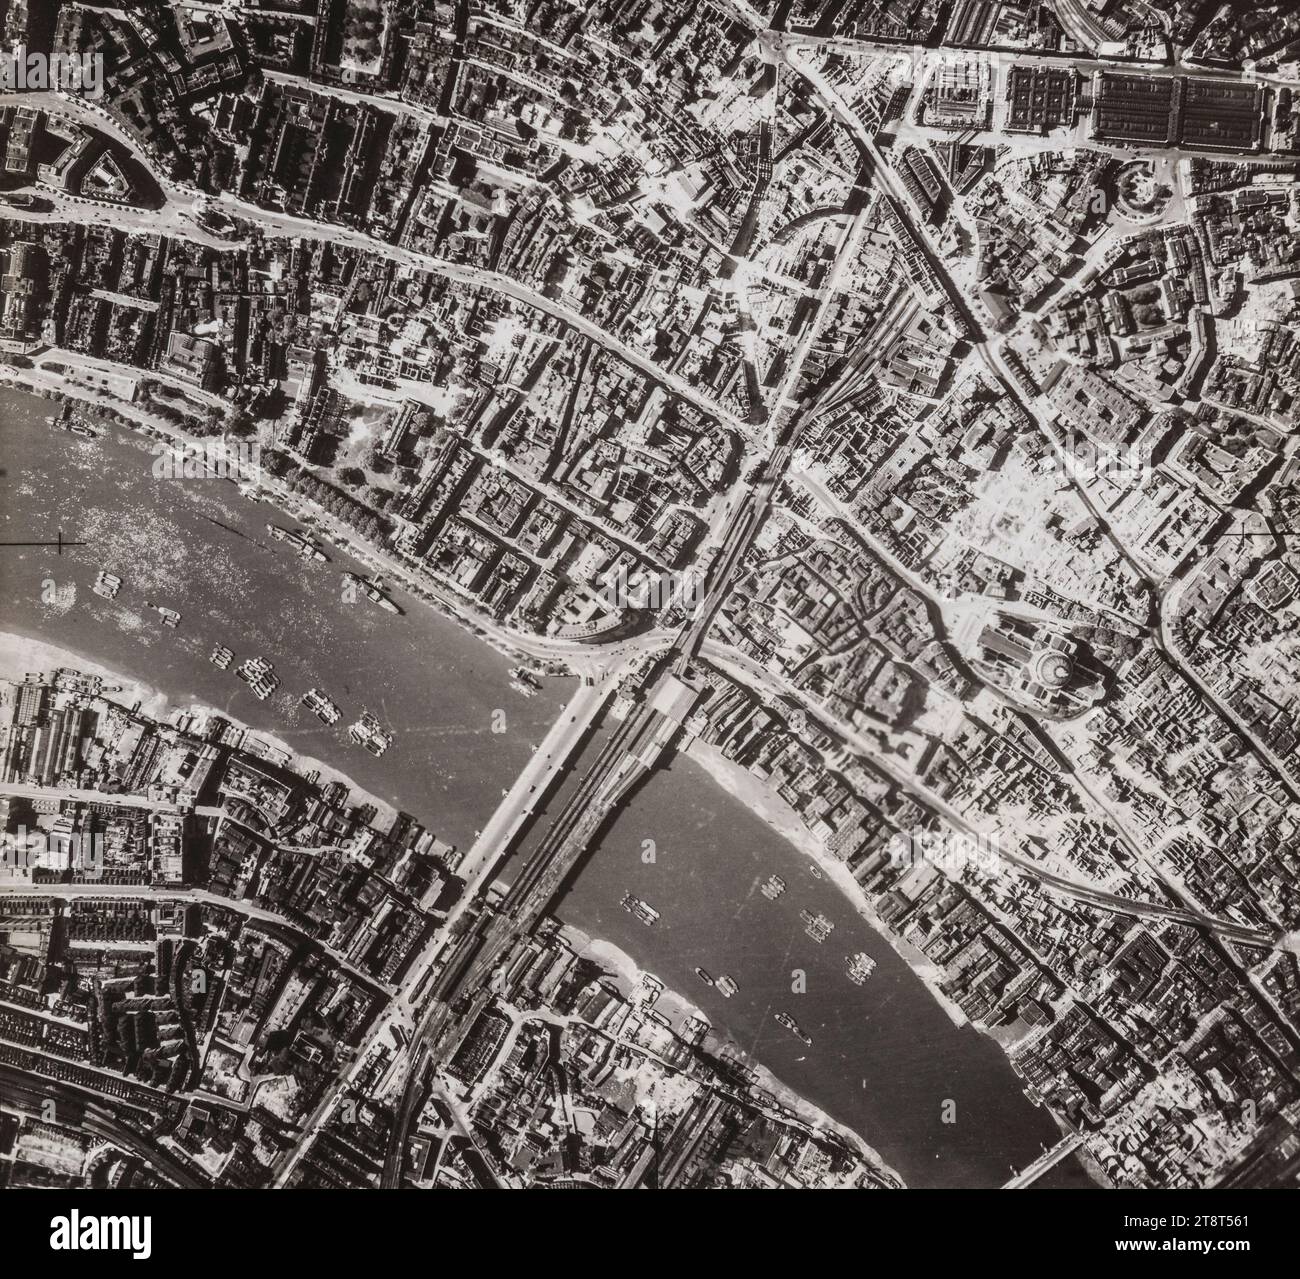 Une photographie aérienne de la City de Londres après le Blitz de 1940, montrant les destructions massives autour de la cathédrale Saint-Paul (au centre à droite). Le vieux marché Smithfield est visible en haut à droite, ainsi que les deux ponts Blackfriars (routier et ferroviaire) sur la Tamise Banque D'Images